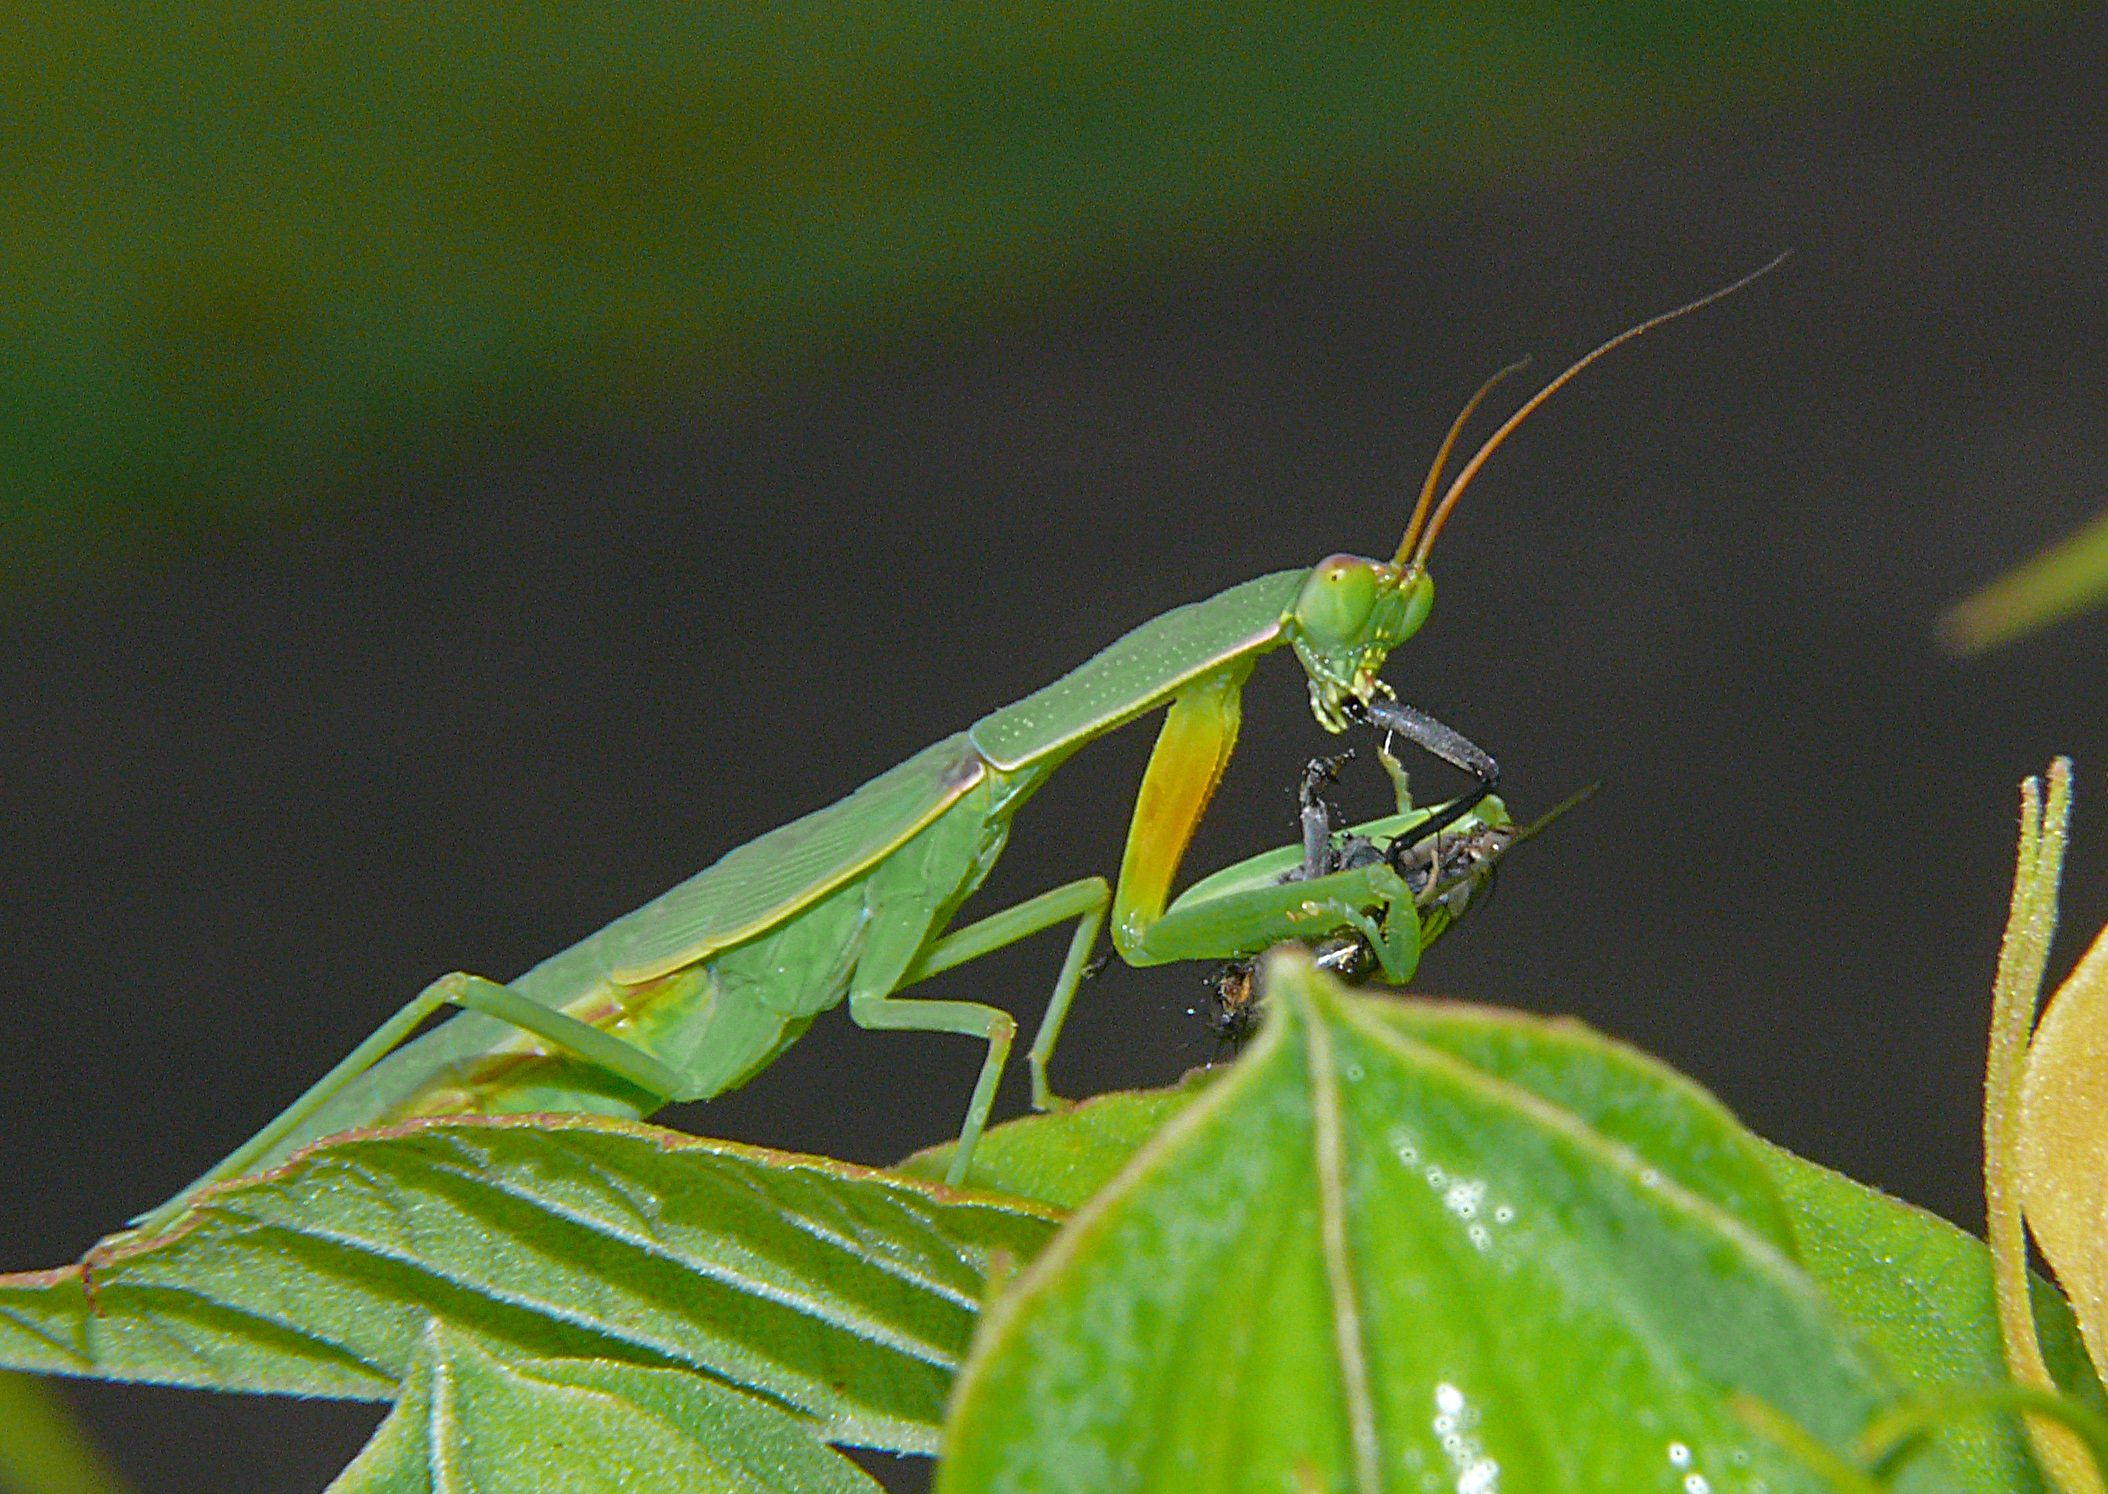 a praying mantiss on a green leaf